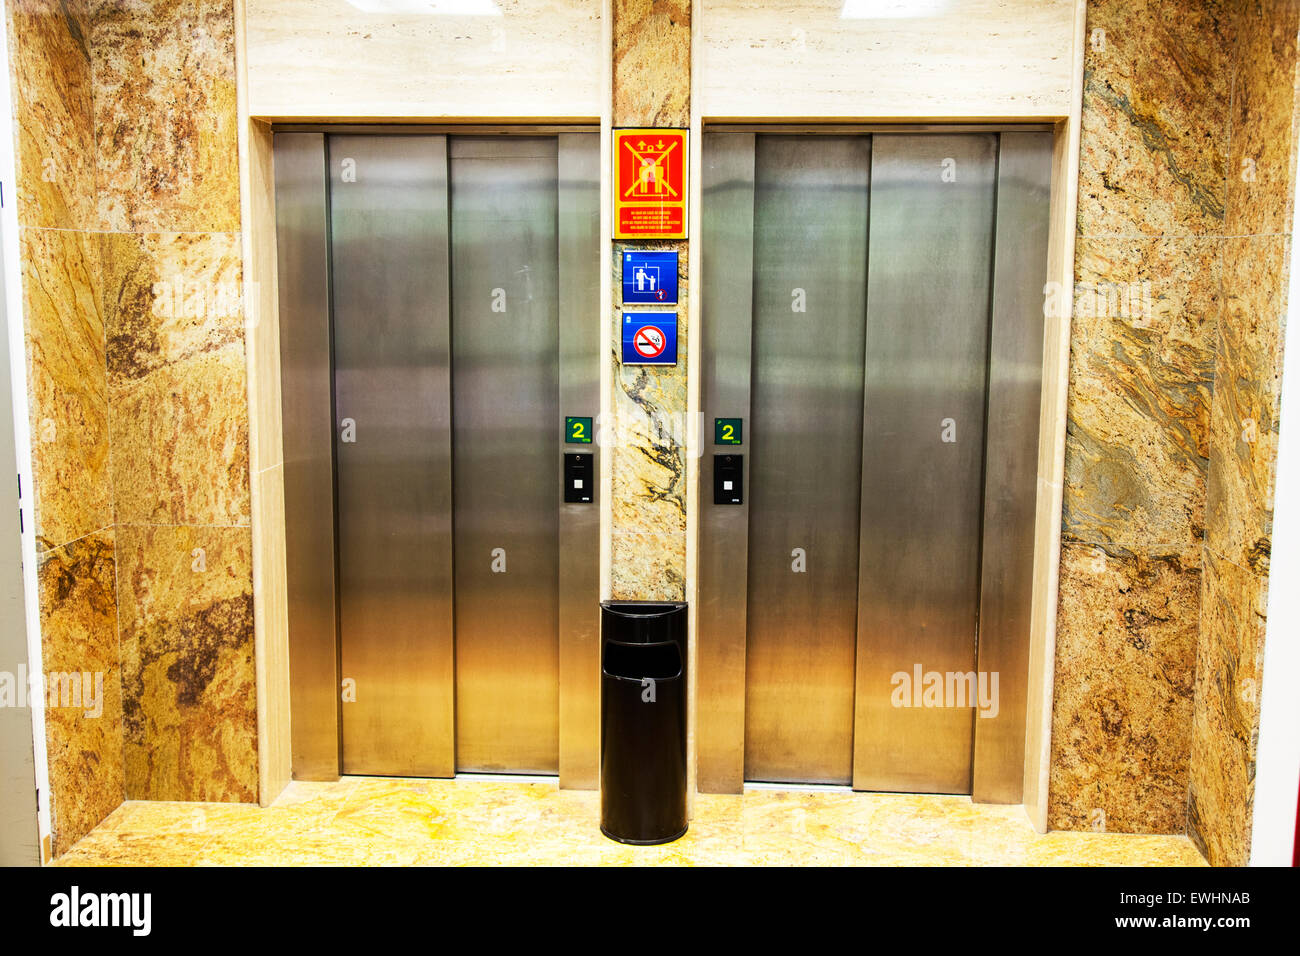 Portes d'ascenseur Banque de photographies et d'images à haute résolution -  Alamy